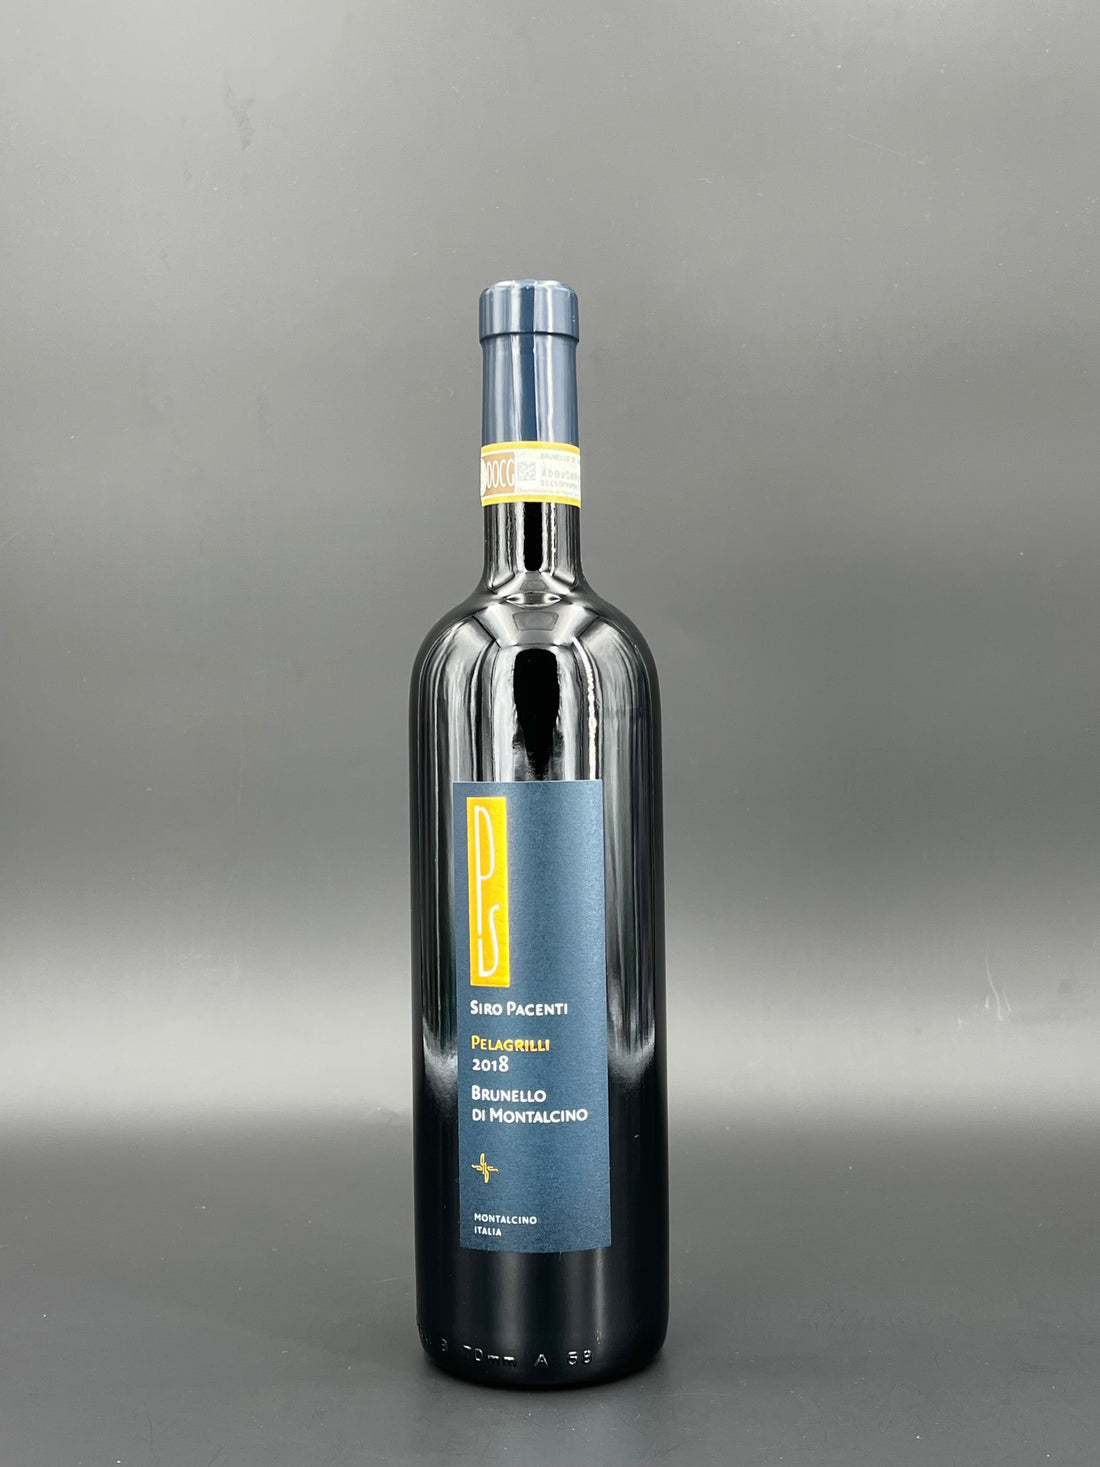 Brunello di Montalcino Pelagrilli Normalflasche | Siro Pacenti